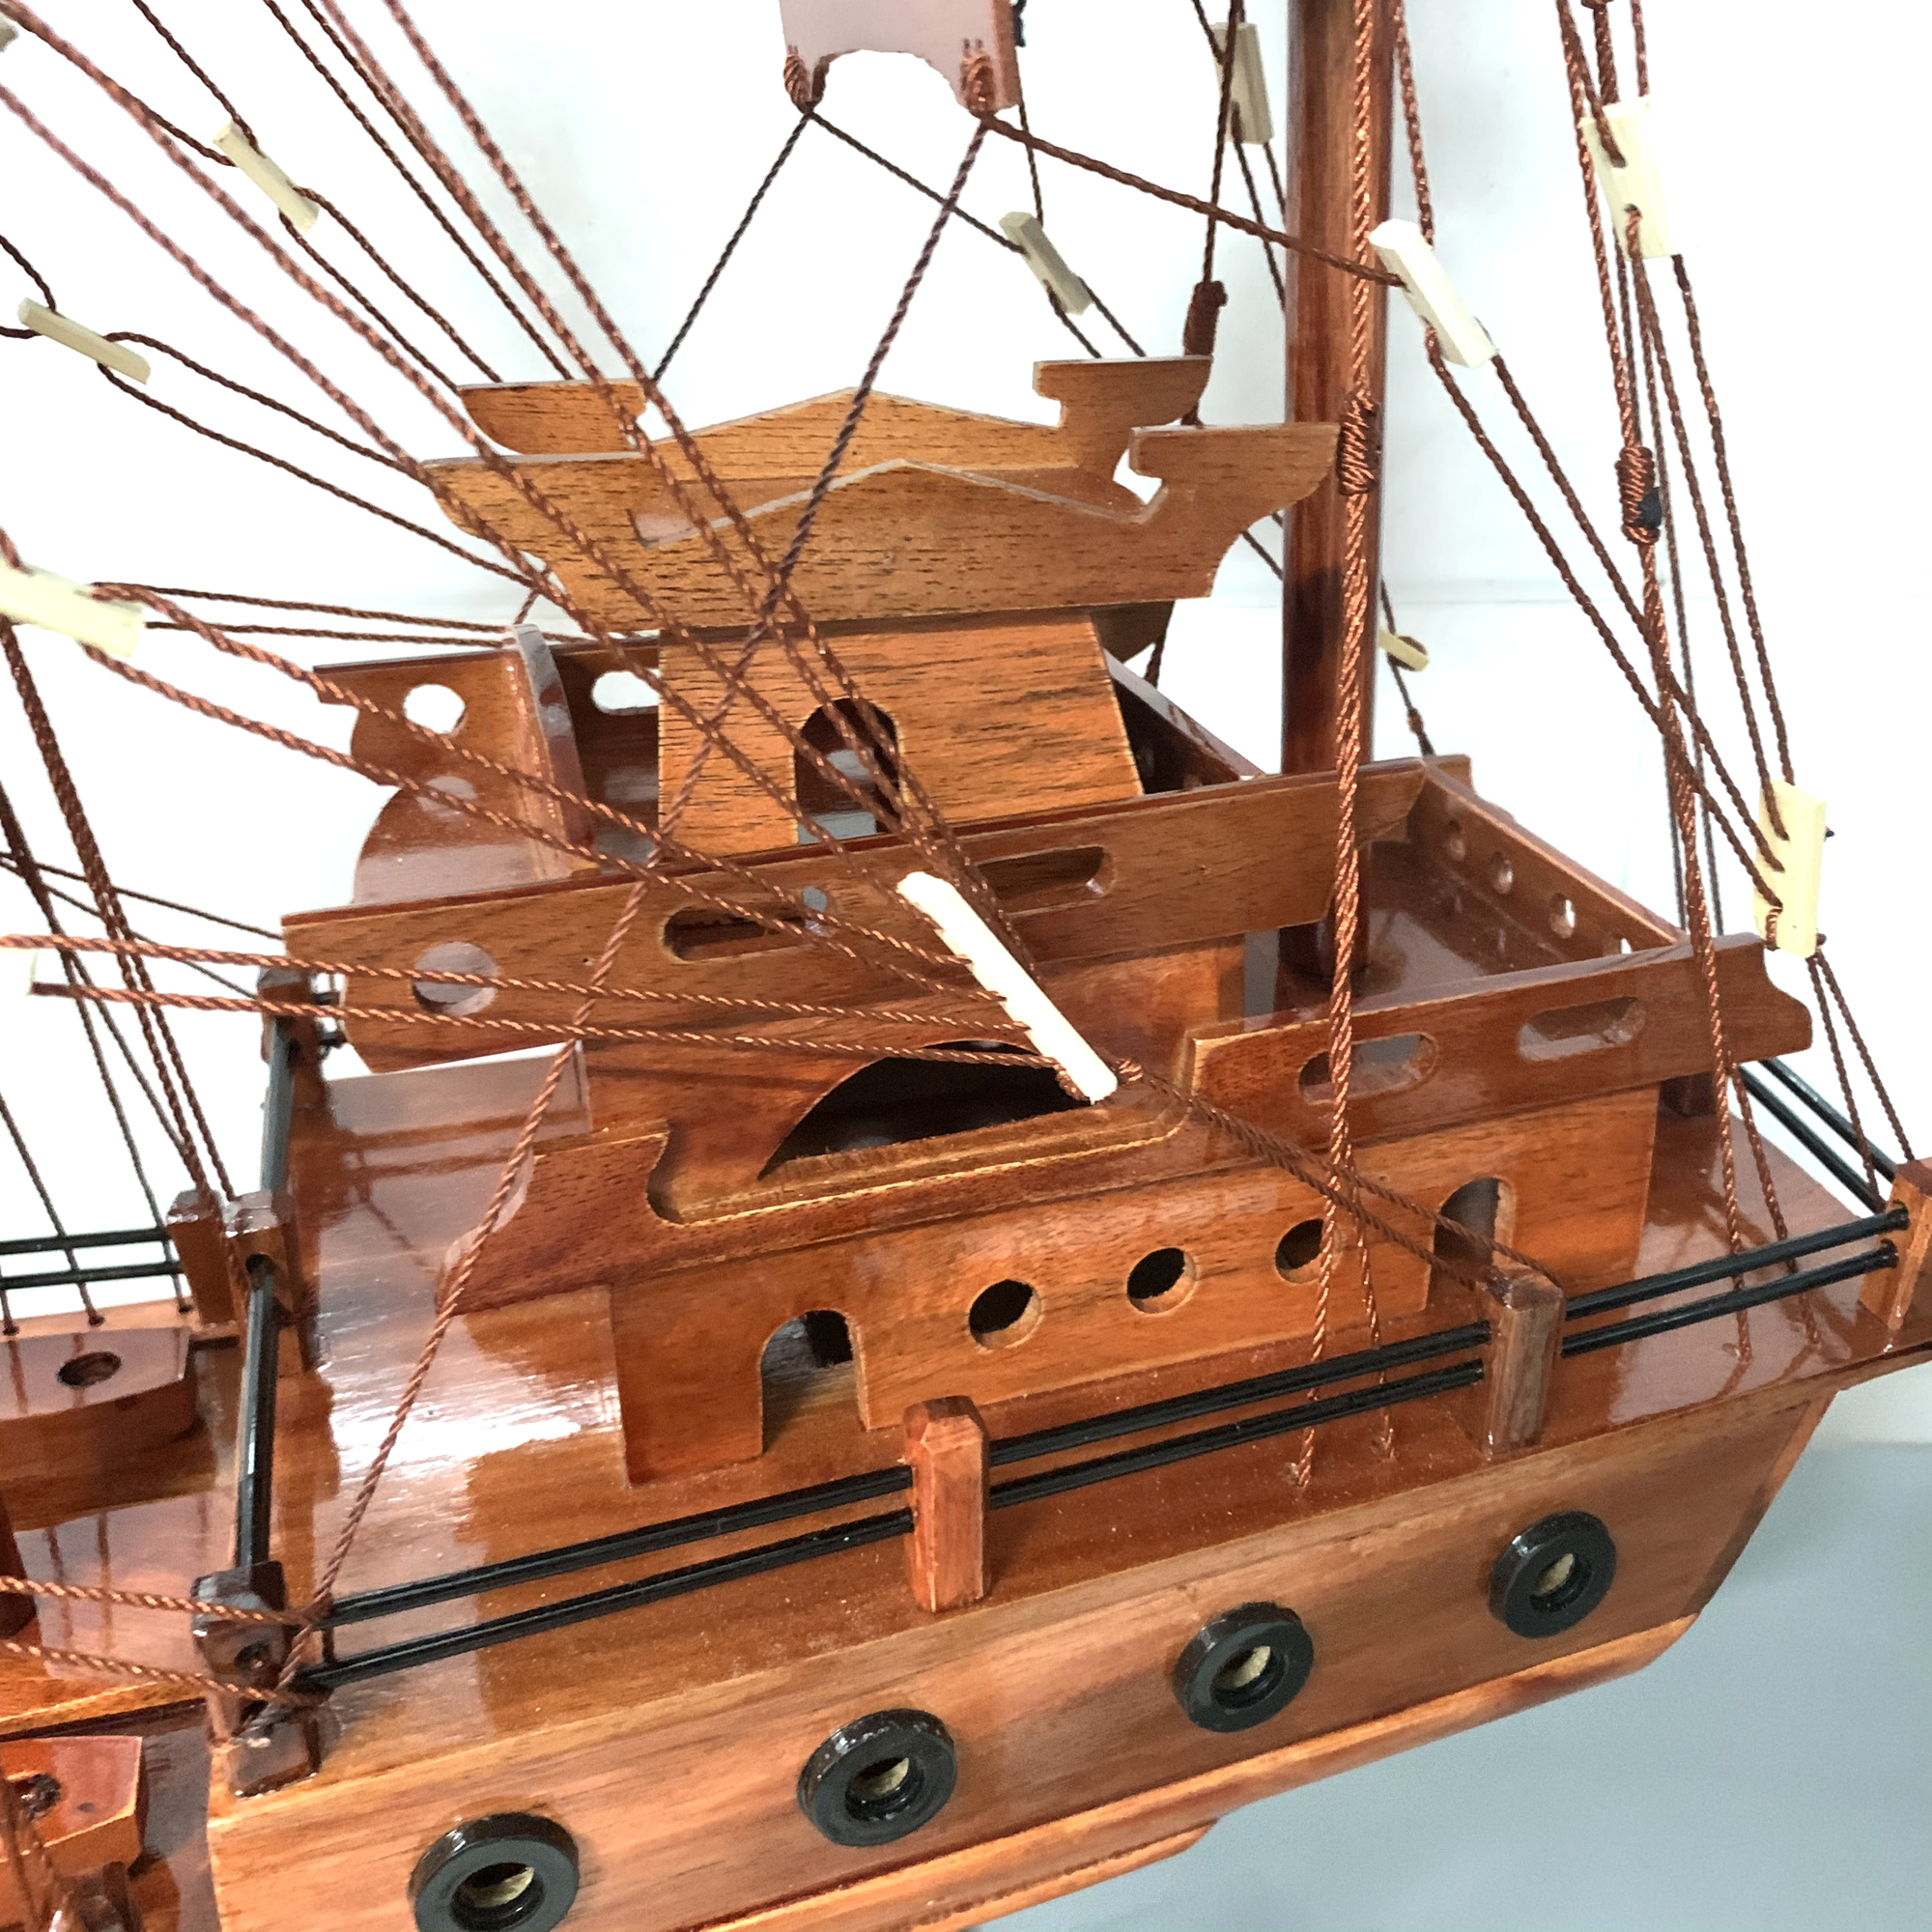 Mô hình tàu thuyền gỗ trang trí thuận buồm xuôi gió - Buồm gỗ - Thân tàu dài 60cm